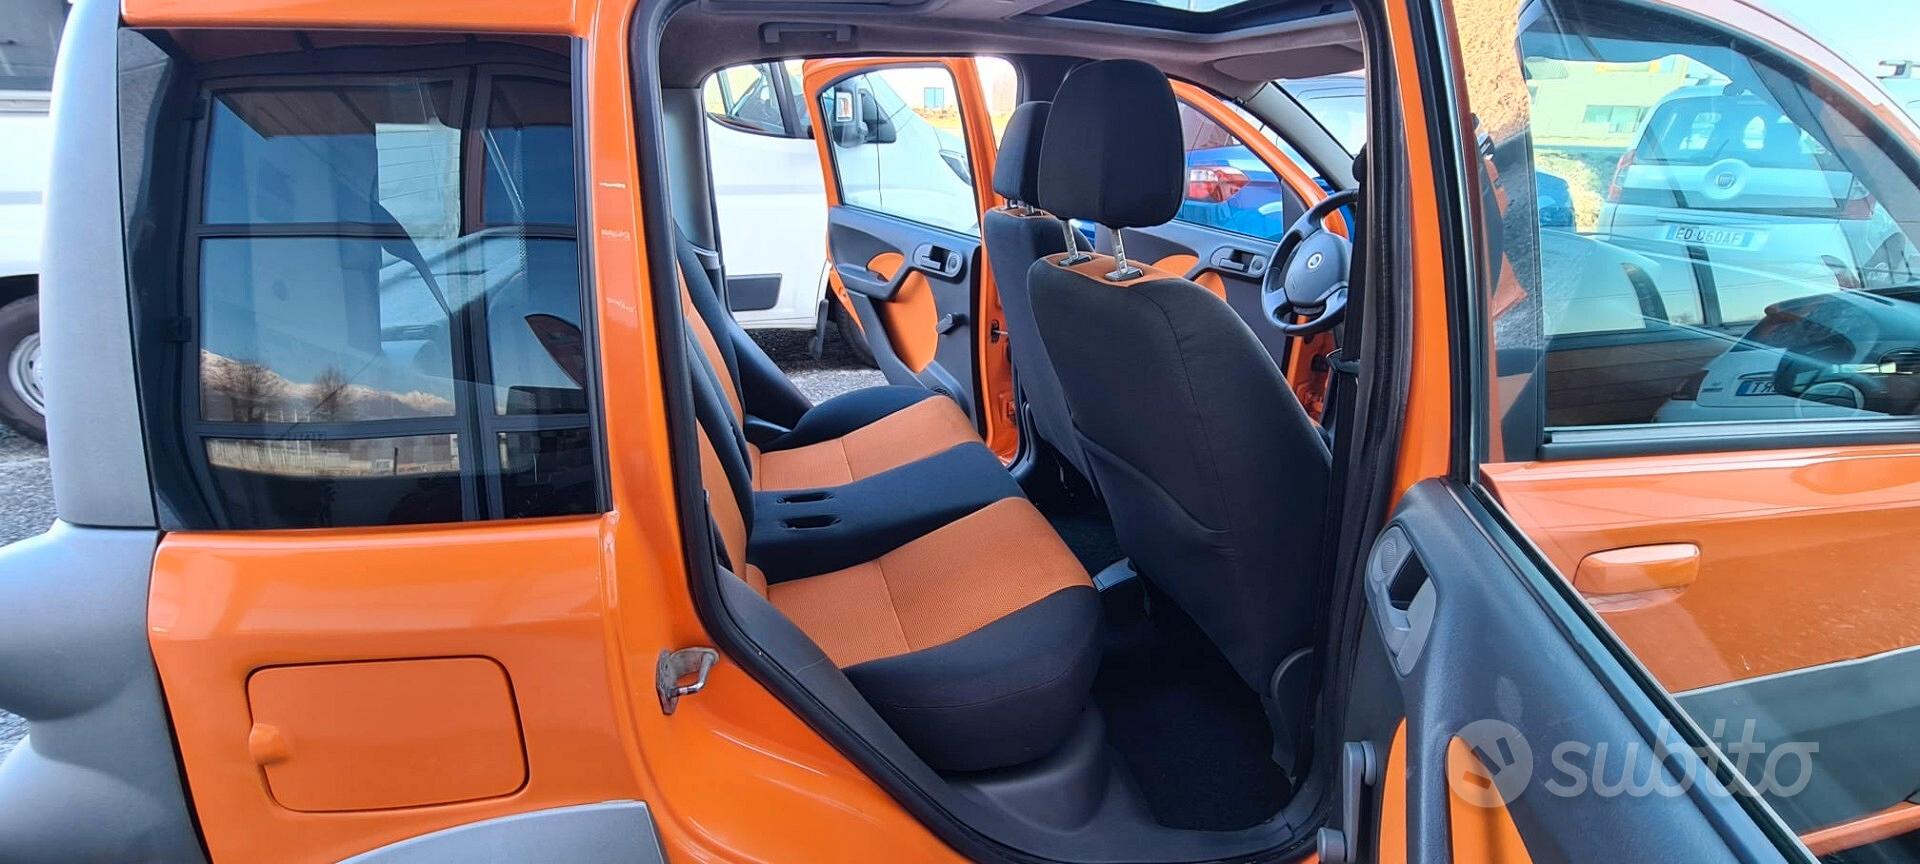 Fiat Panda 1.3 Multijet 16v 4x4, modello anno 2006-, arancione